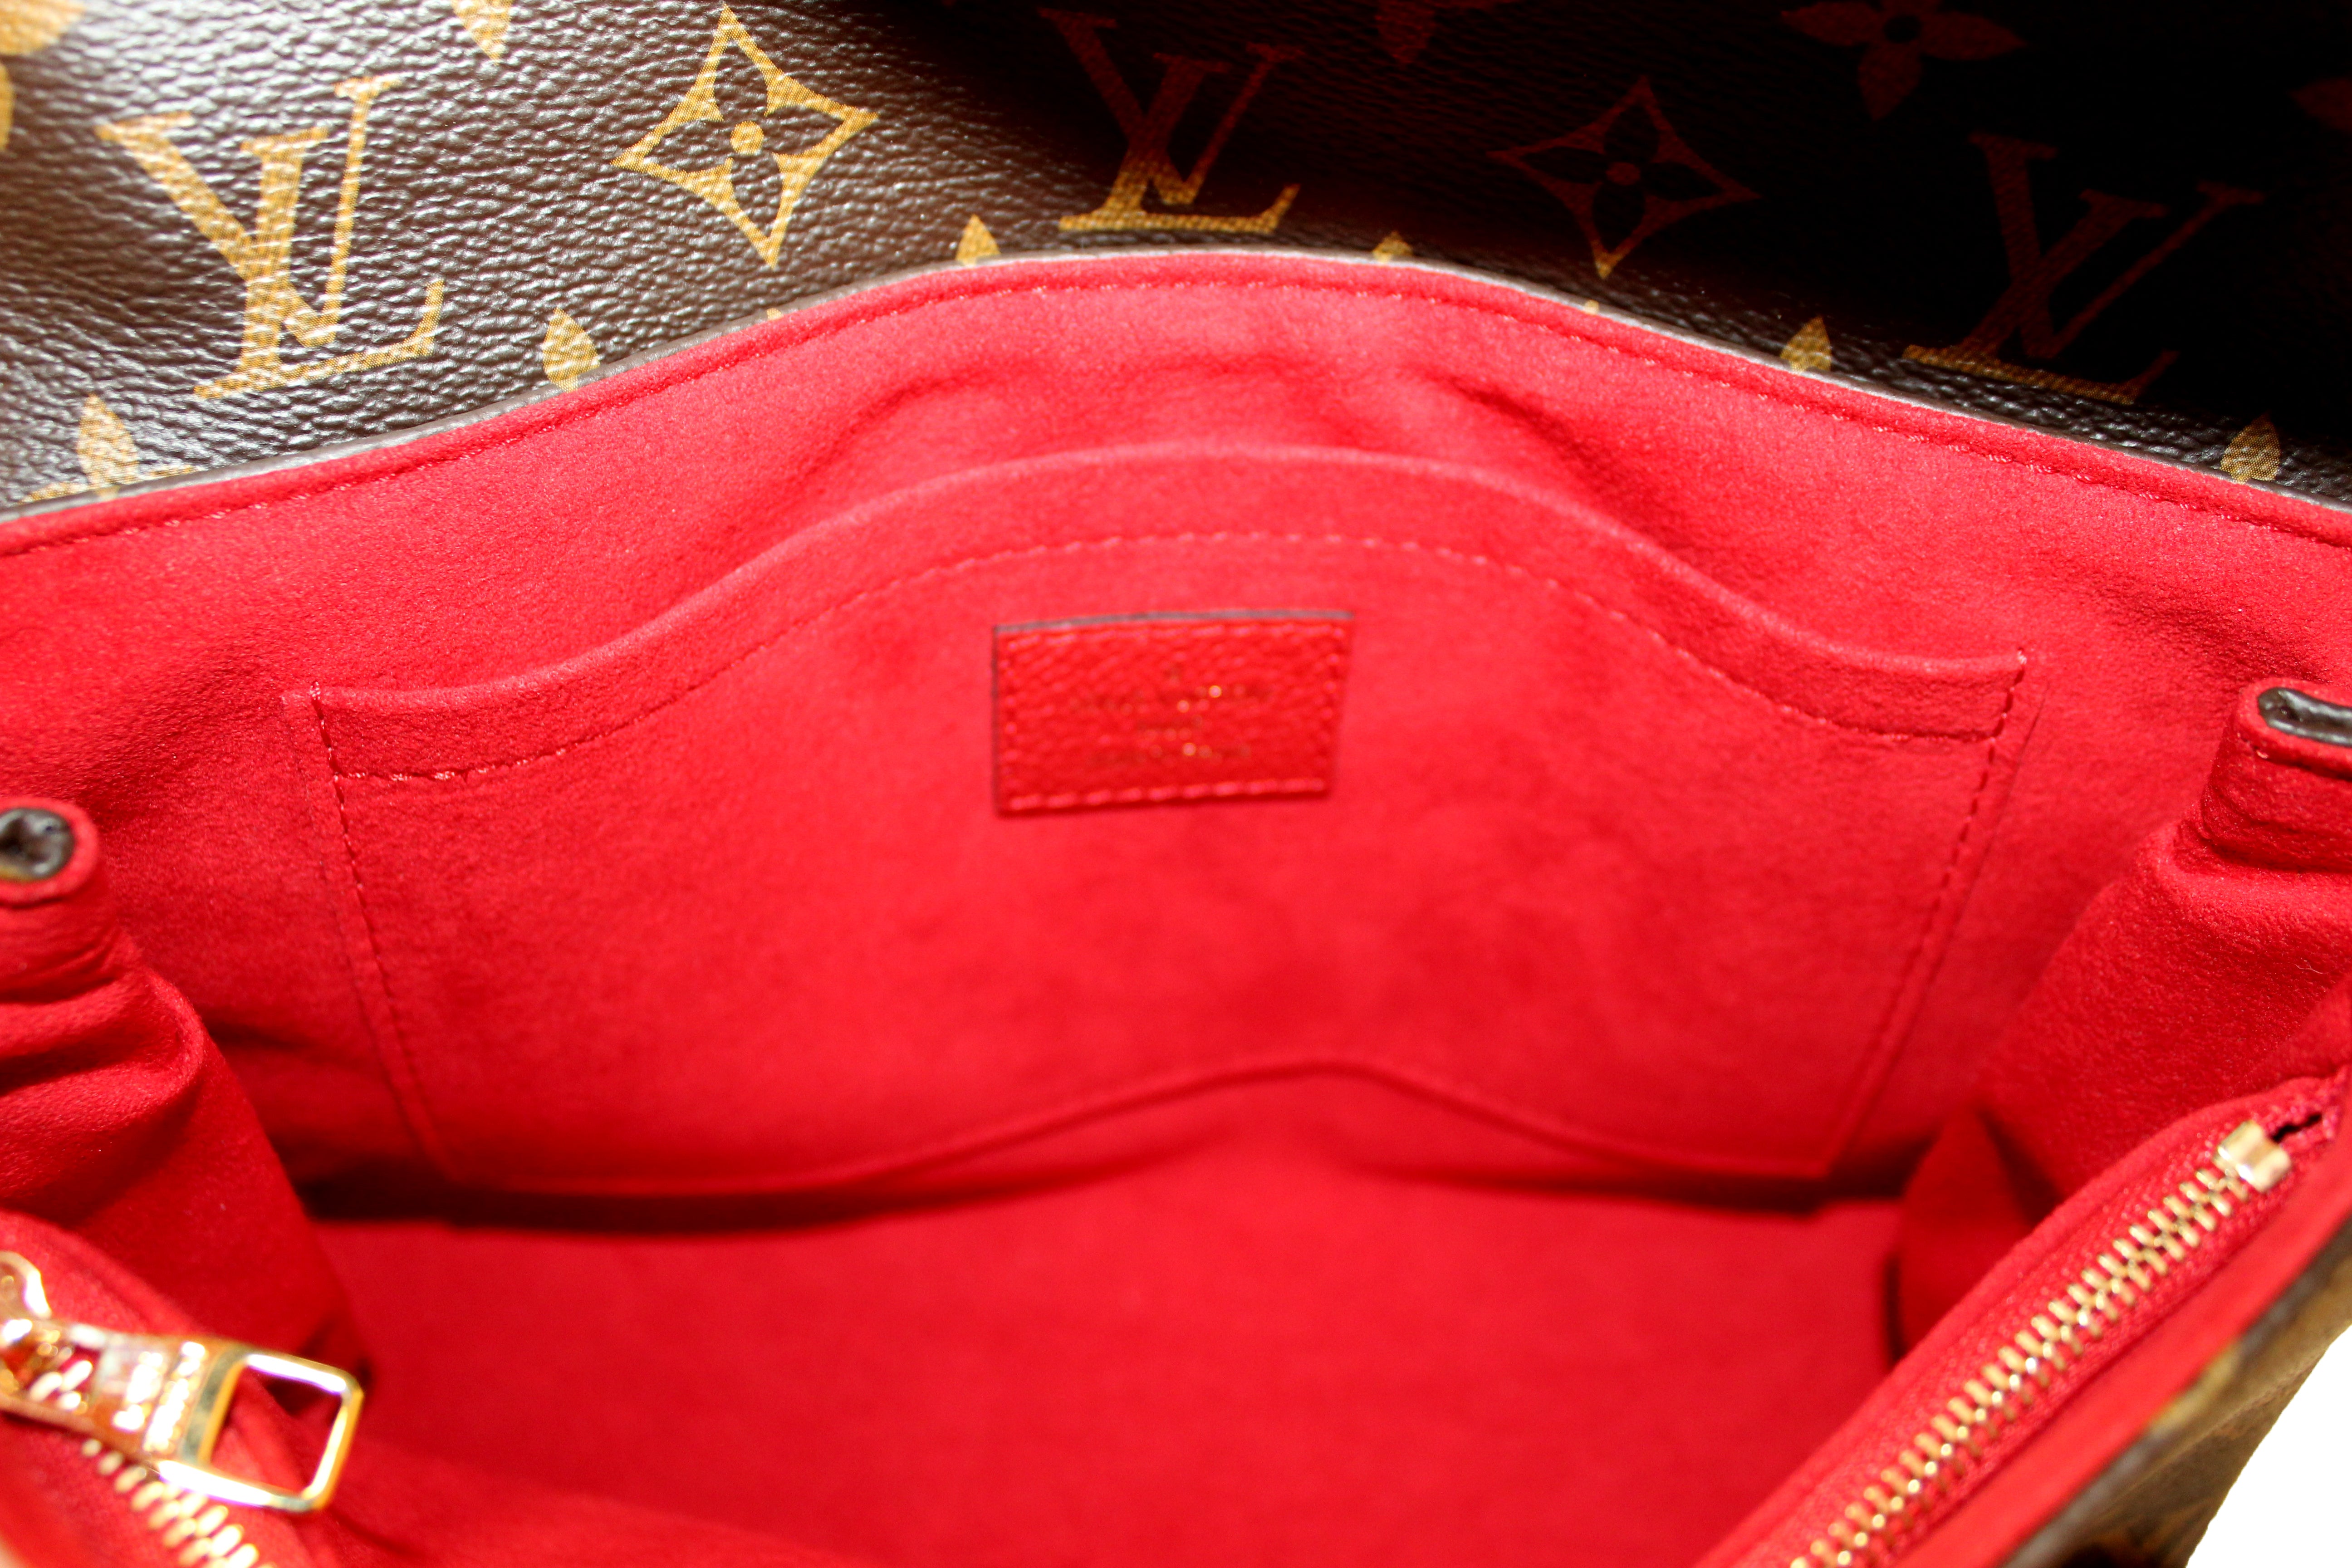 Louis Vuitton Saint Placide Chain Bag in Cerise, Luxury, Bags